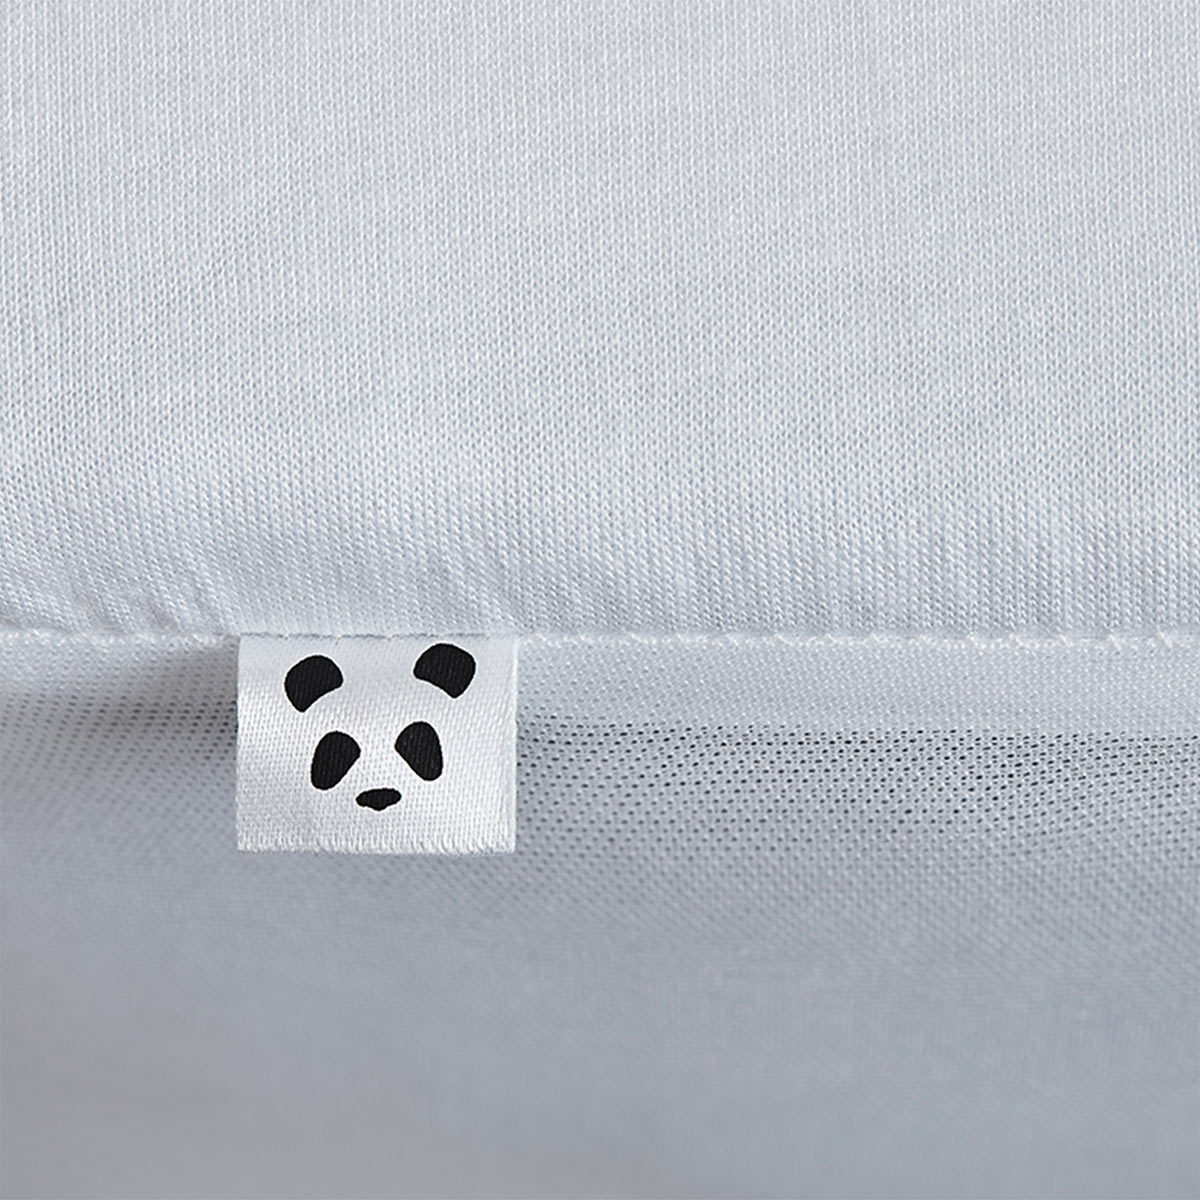 Panda Mattress Protector Close Up